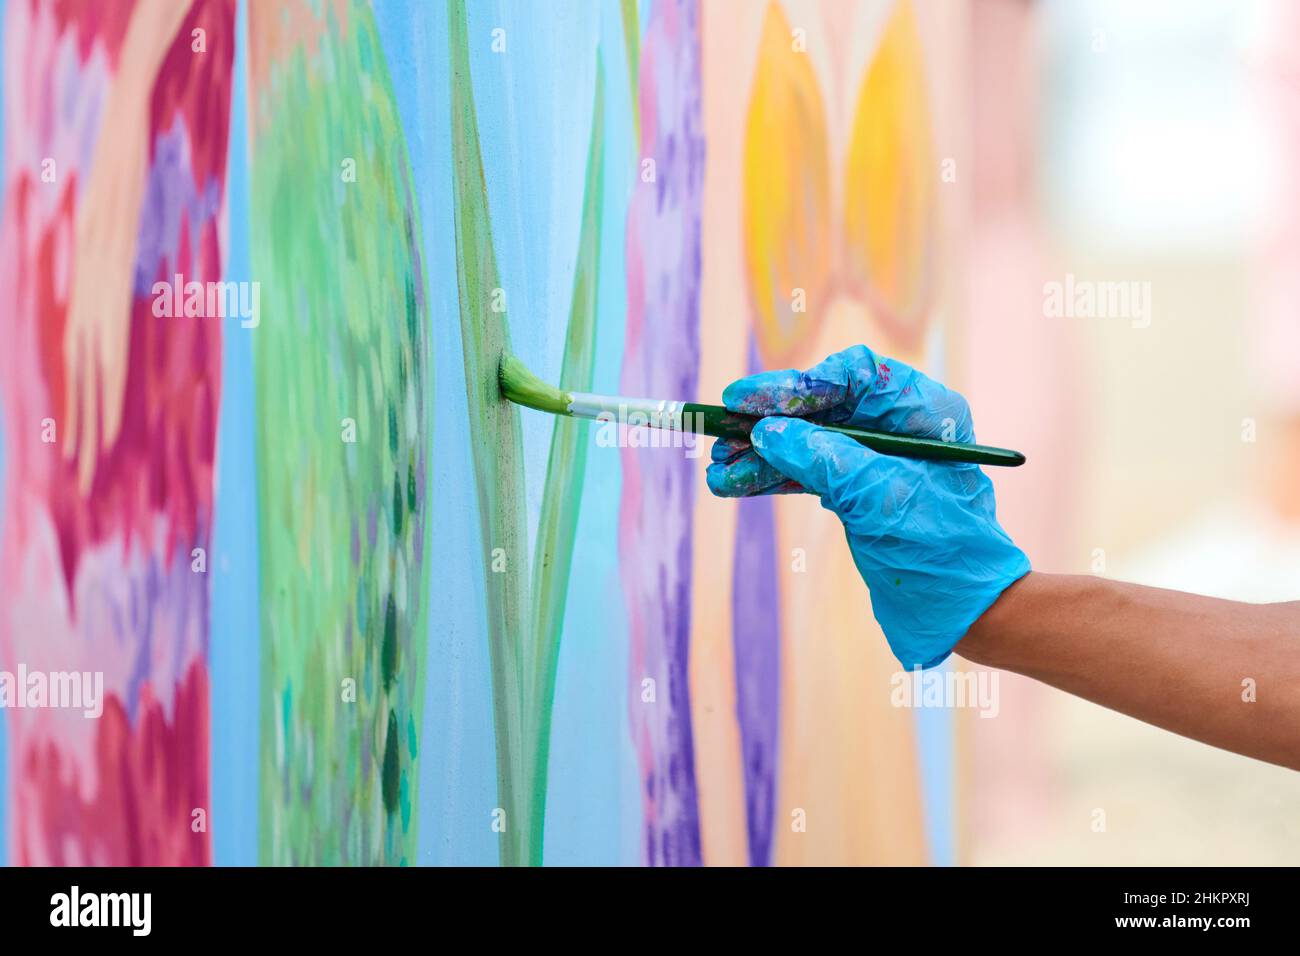 La main de l'artiste avec un pinceau peint en couleurs sur toile lors d'un festival d'art en plein air.Femme peintre en gants bleus dessine une image surréaliste avec pai Banque D'Images